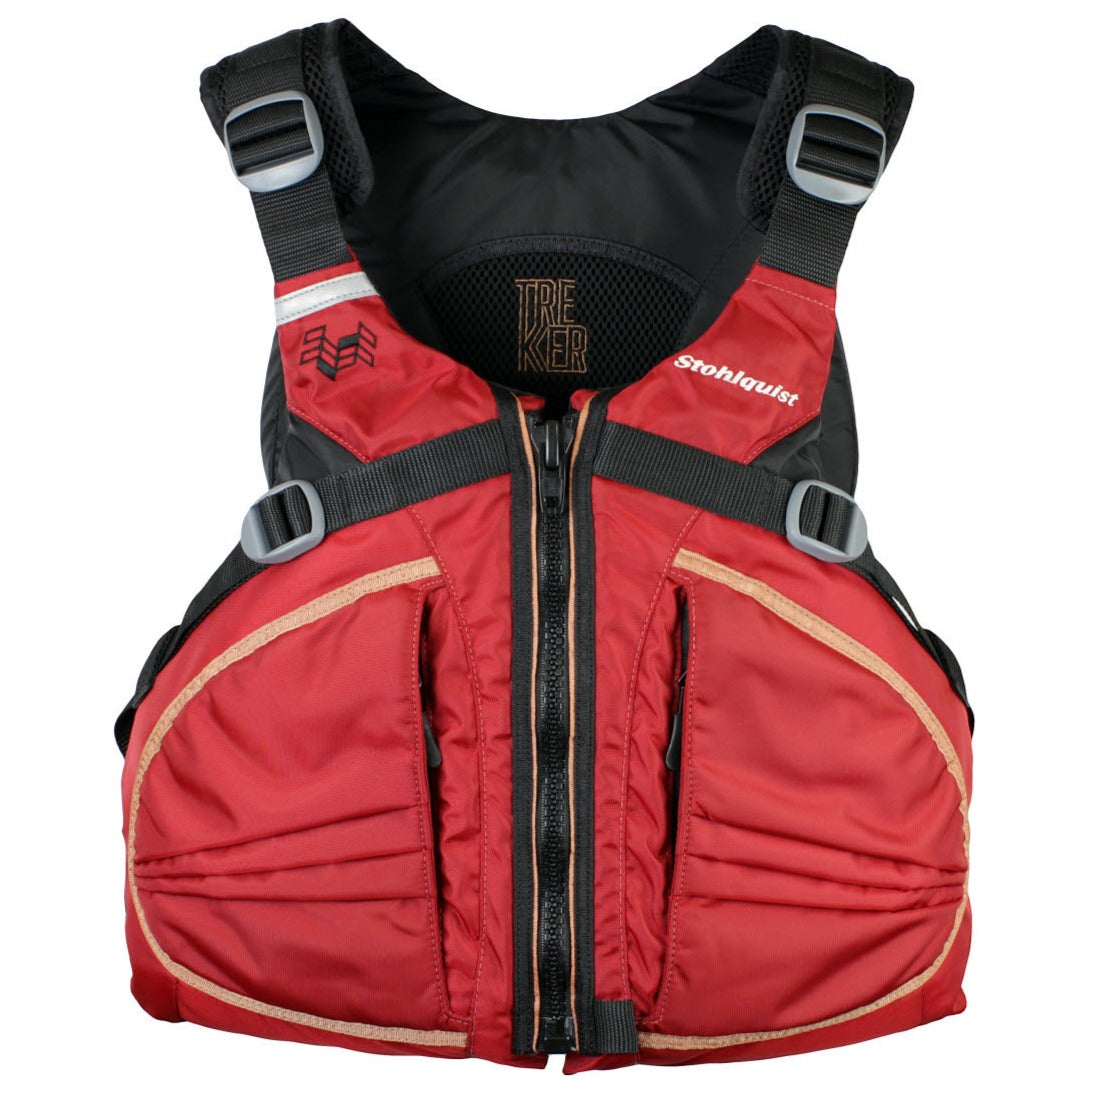 Stohlquist Trekker Men's Life Jacket PFD - Red Front